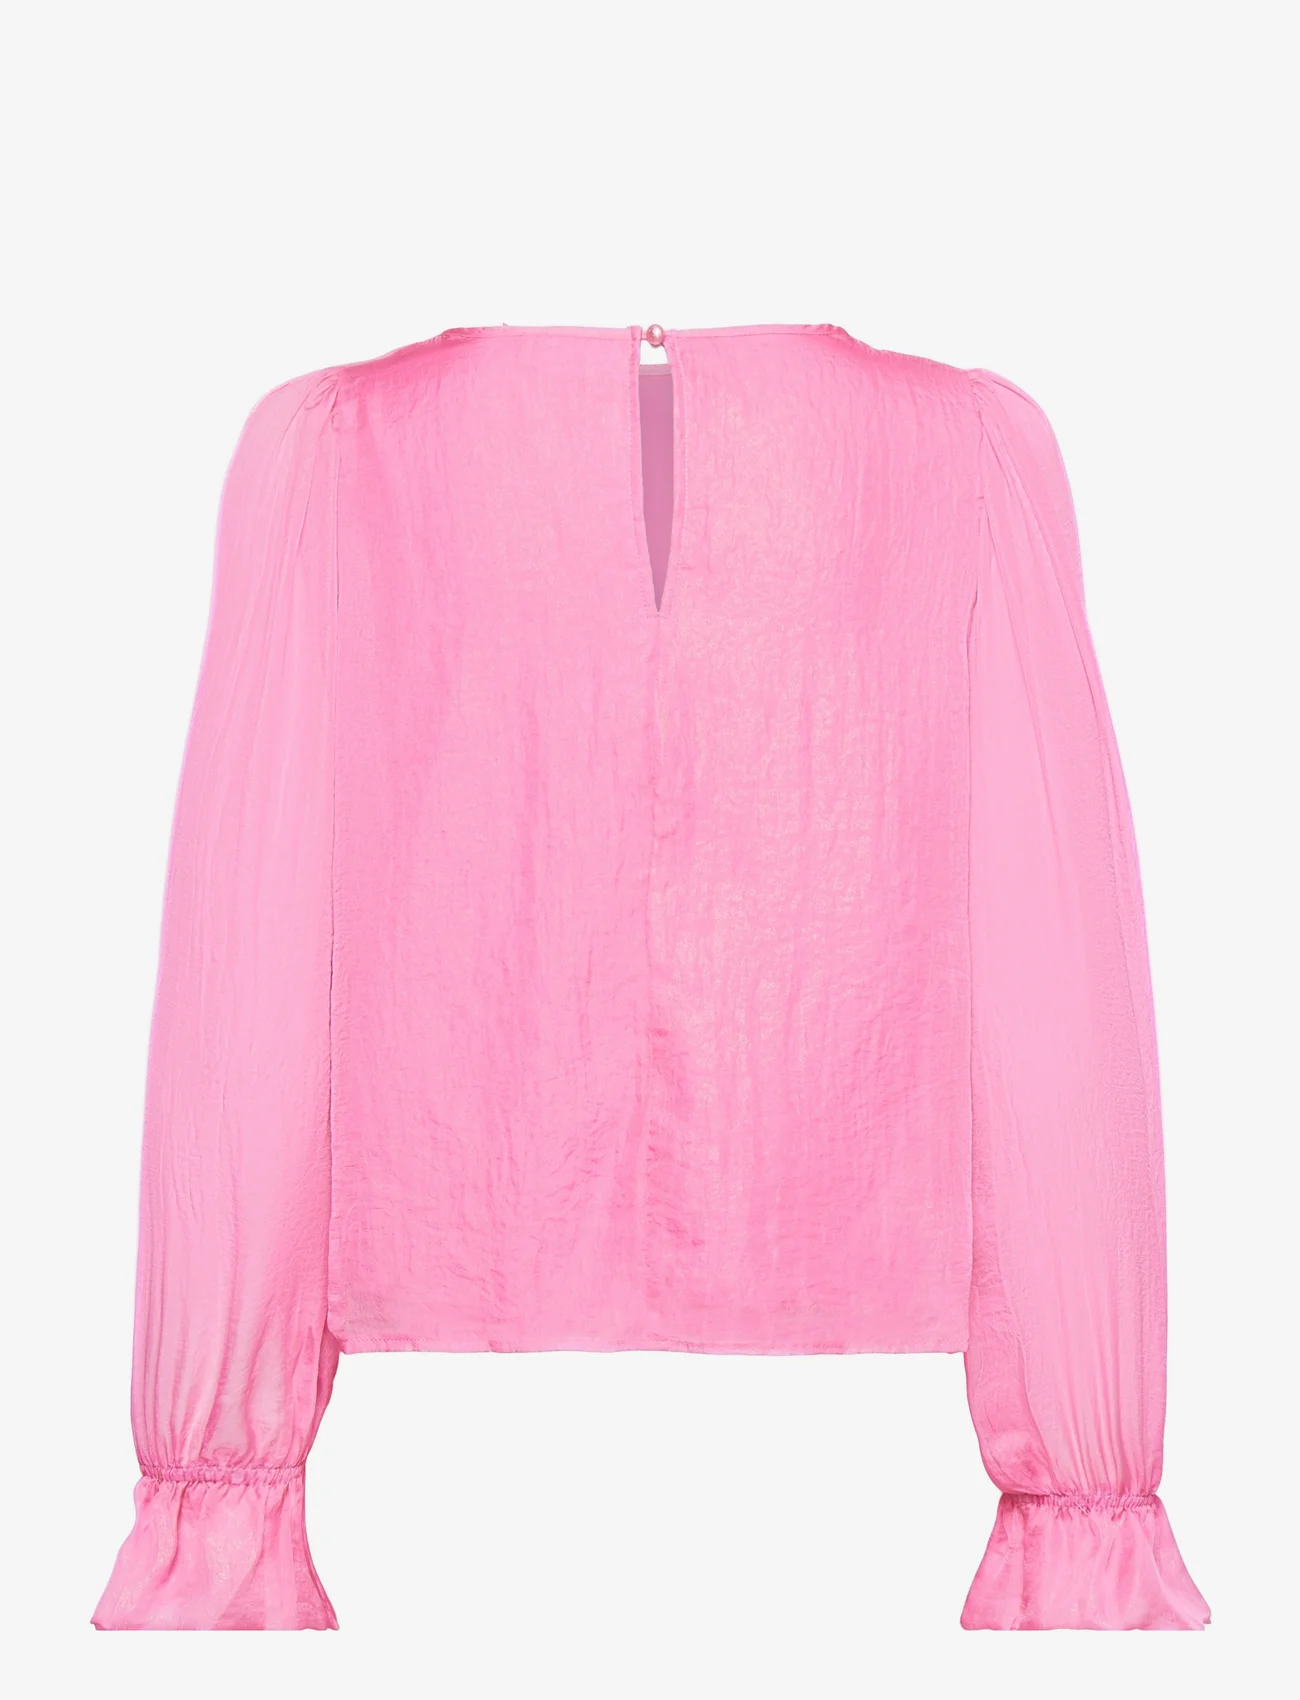 Coster Copenhagen - Top in metallic shimmer - long-sleeved blouses - metallic pink - 1